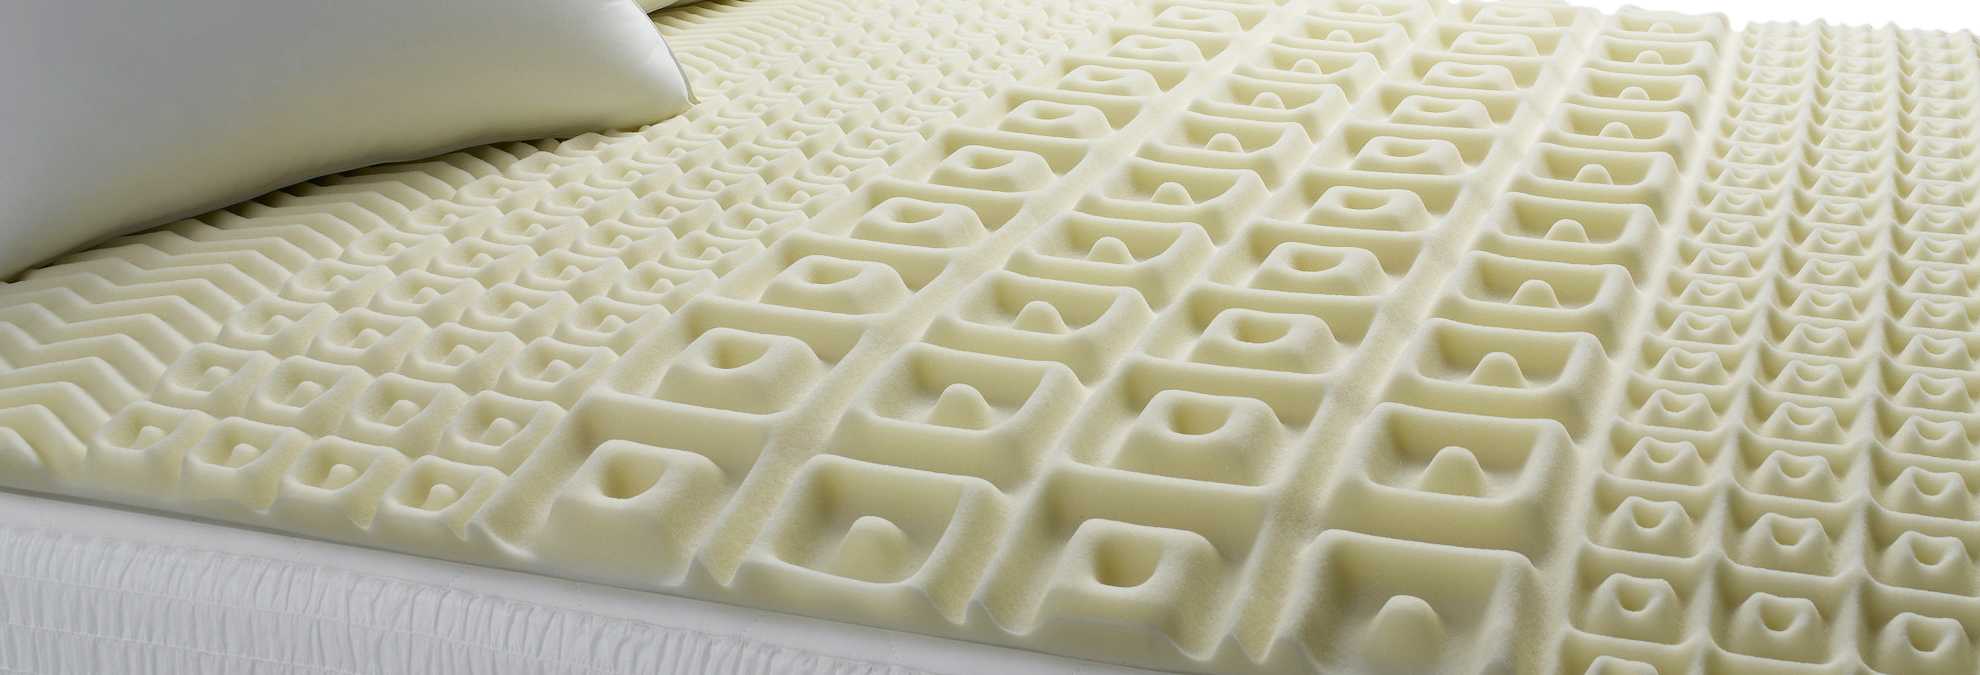 egg crate foam mattress topper target